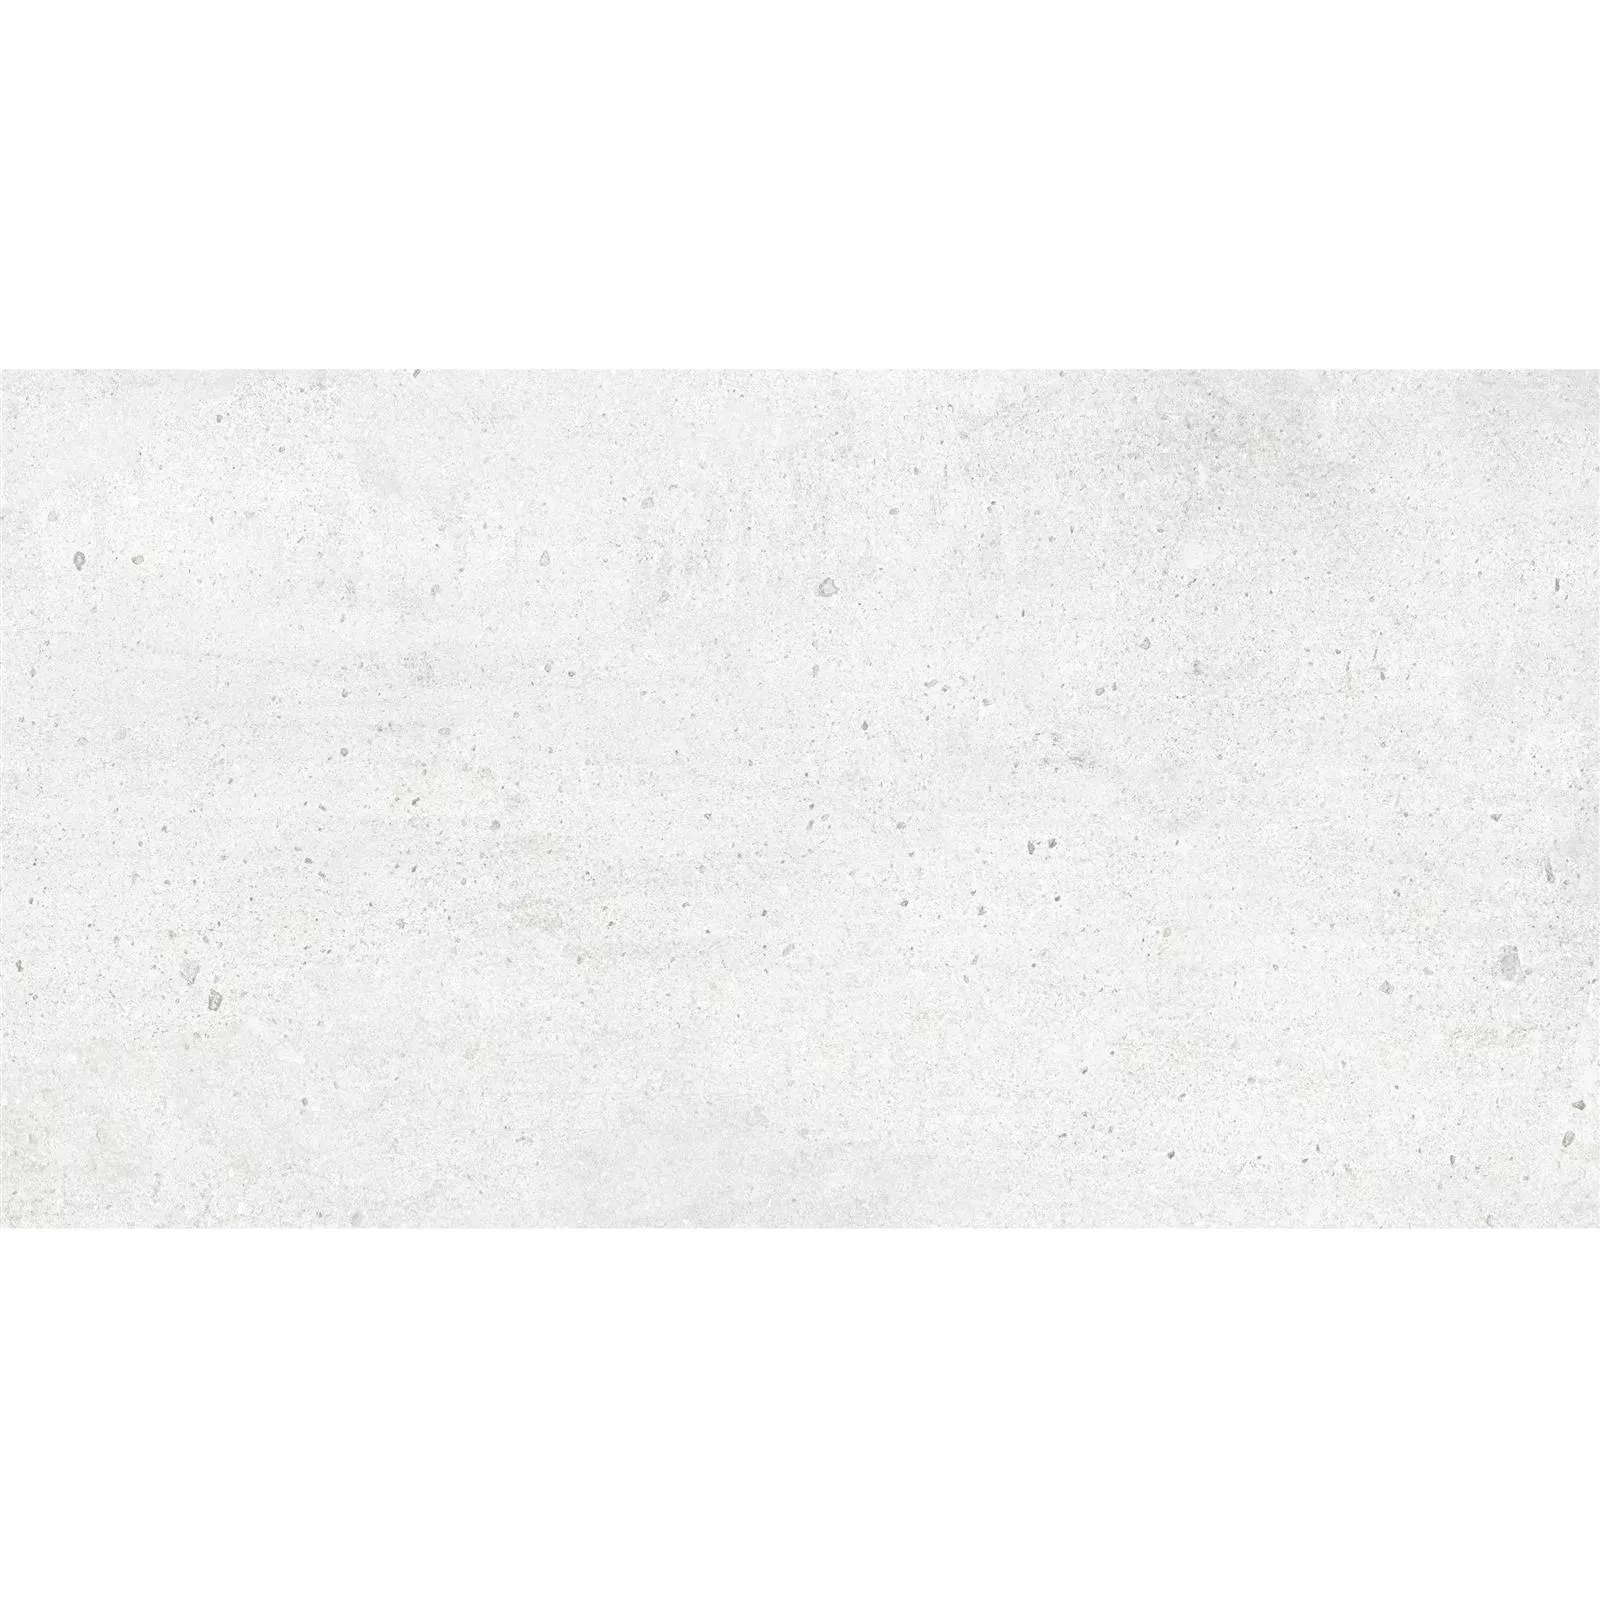 Muster Bodenfliesen Freeland Steinoptik R10/B Weiß 30x60cm